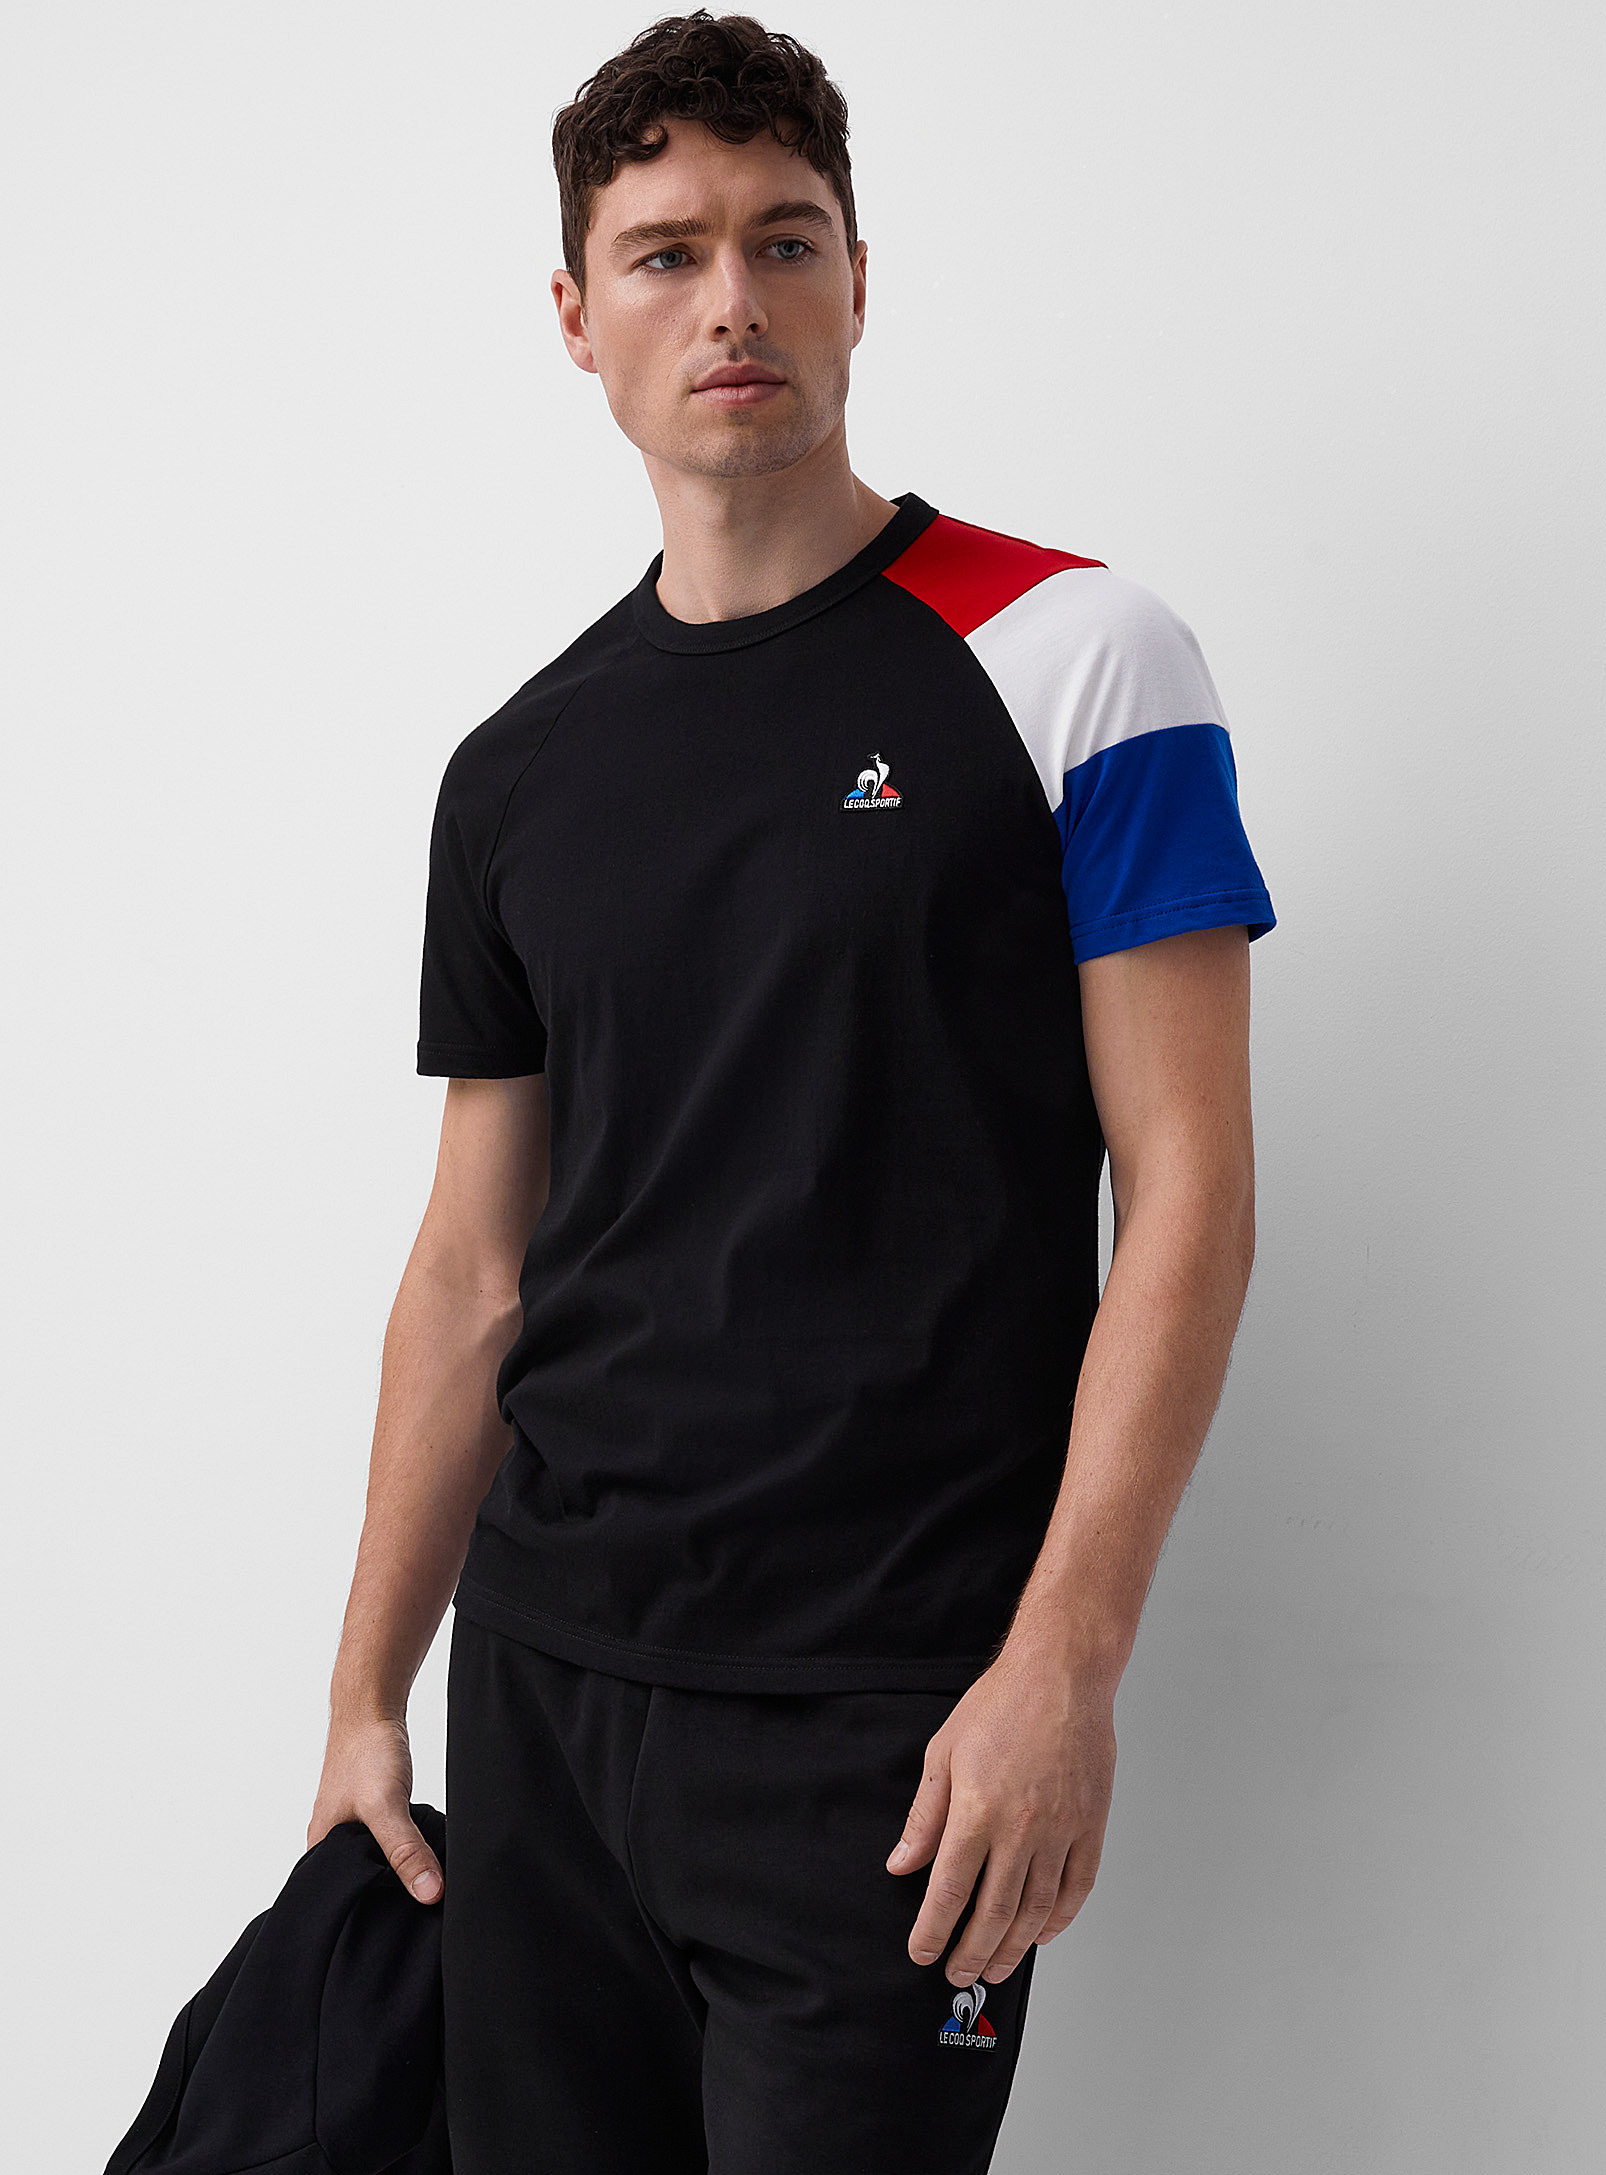 Le coq sportif - Men's Tricolour block T-shirt